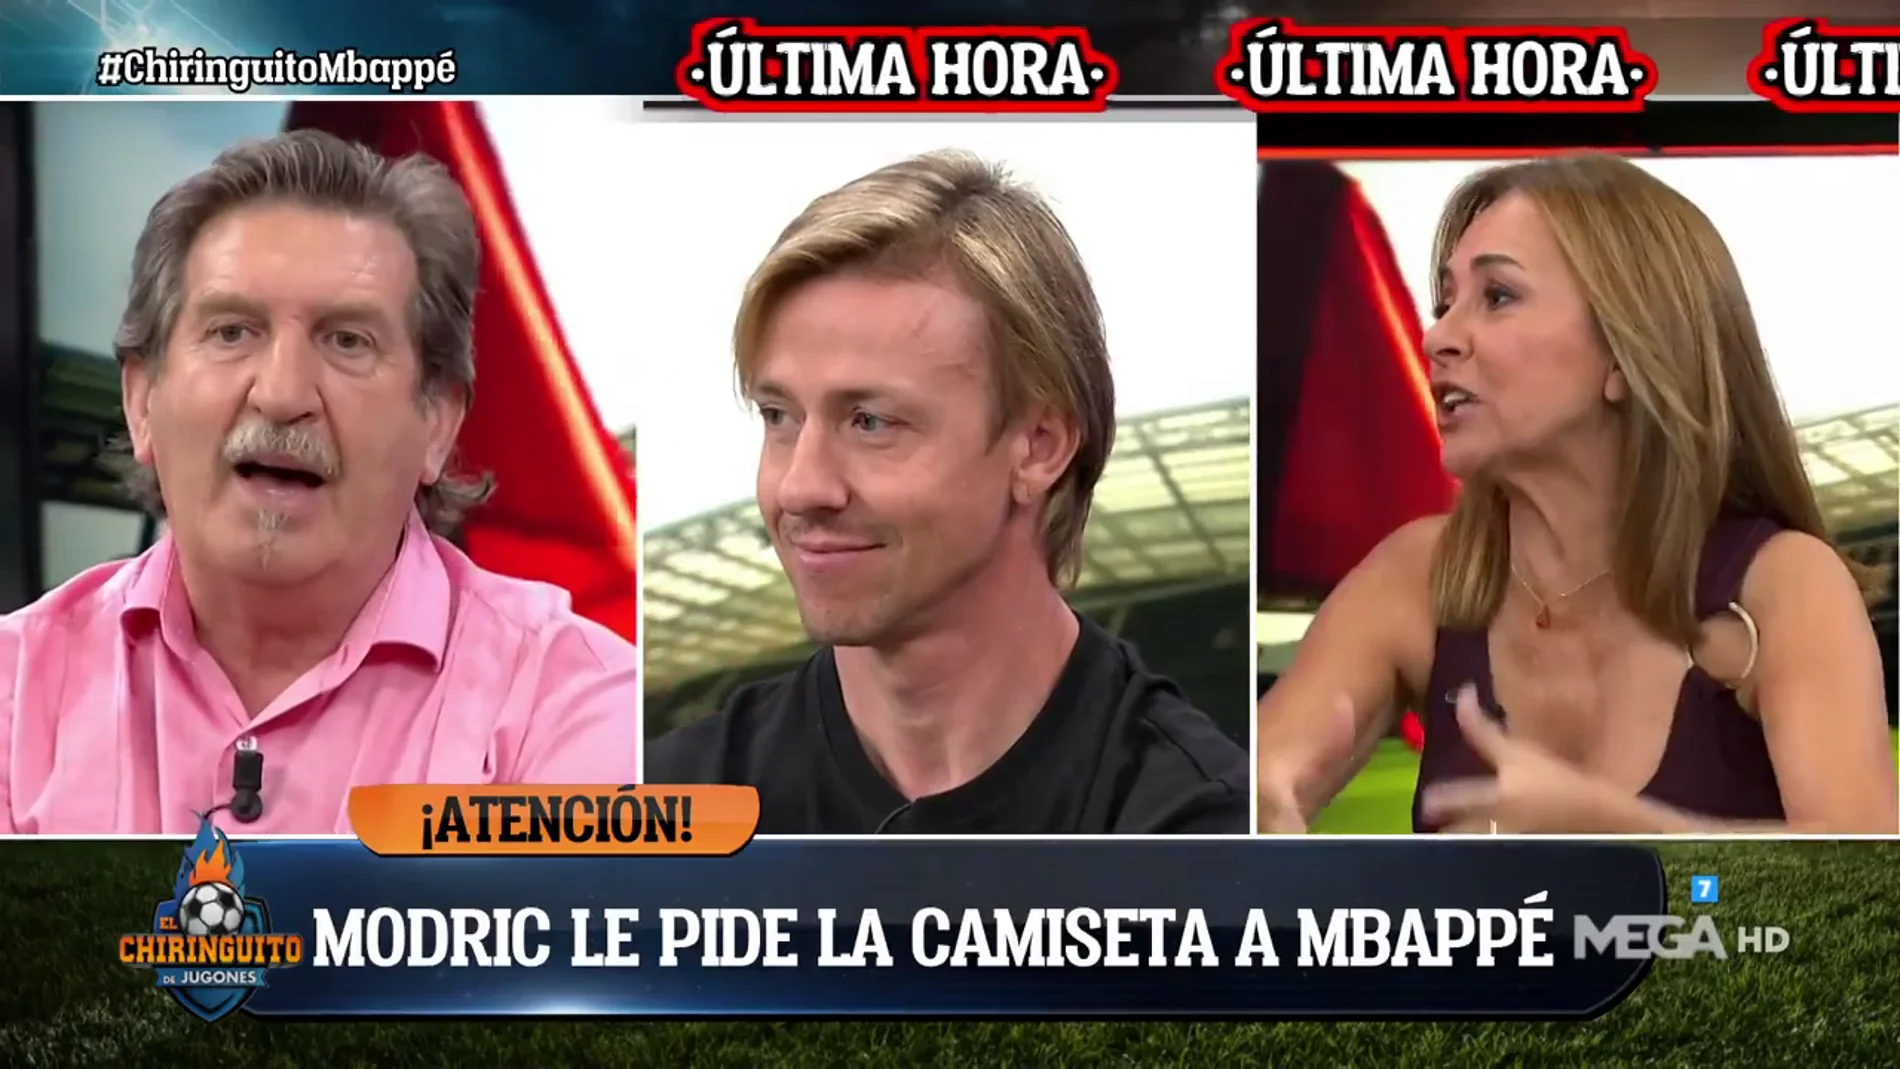 Carme Barcelo: "No entiendo que Modric le pida la camiseta a Mbappé"